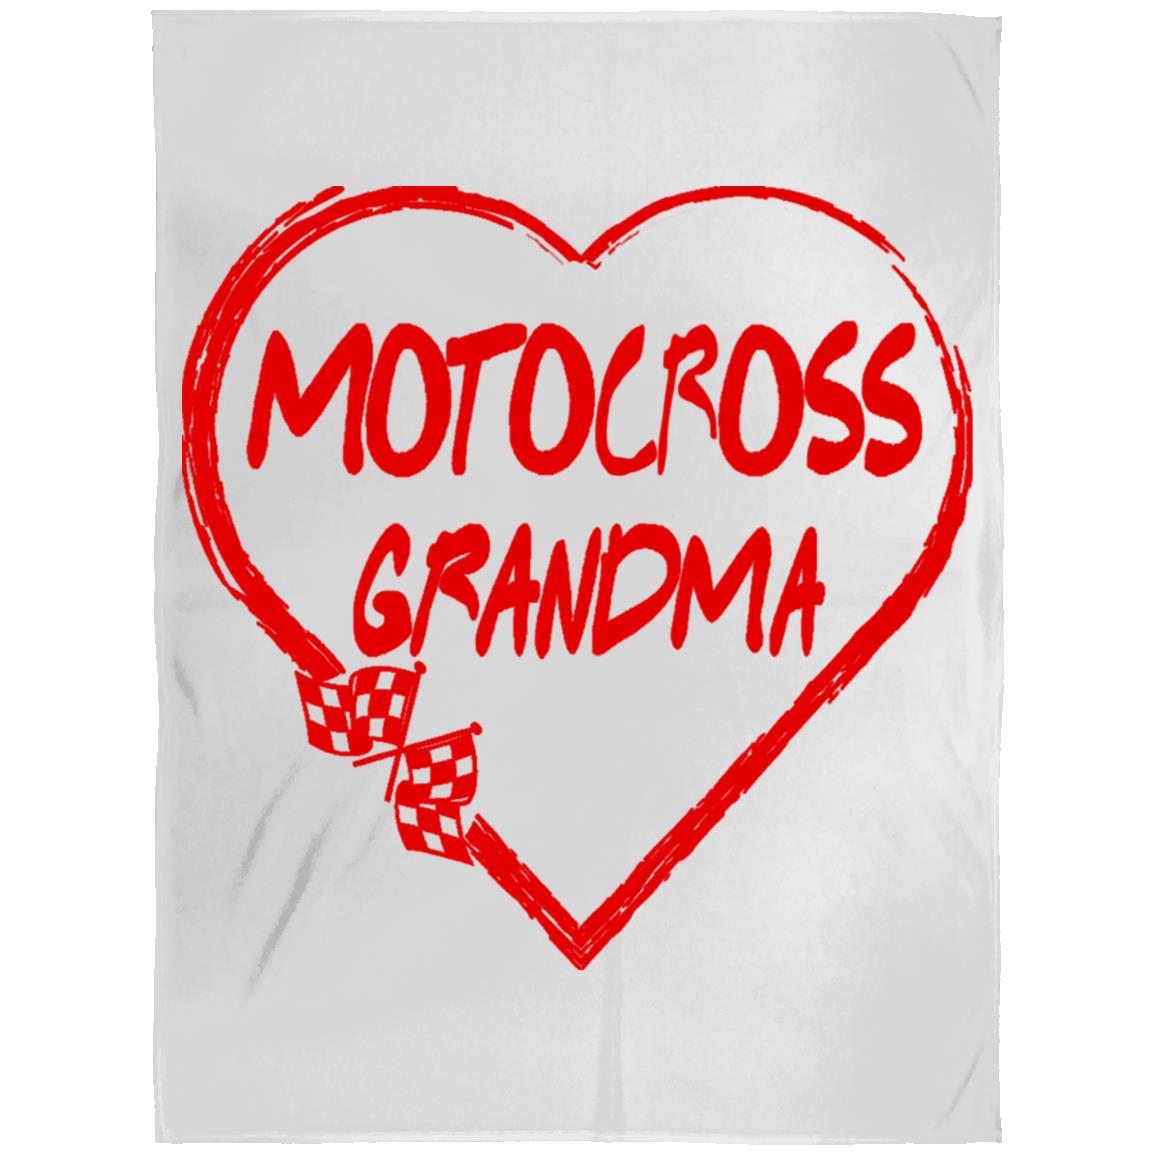 Motocross Grandma Heart Arctic Fleece Blanket 60x80